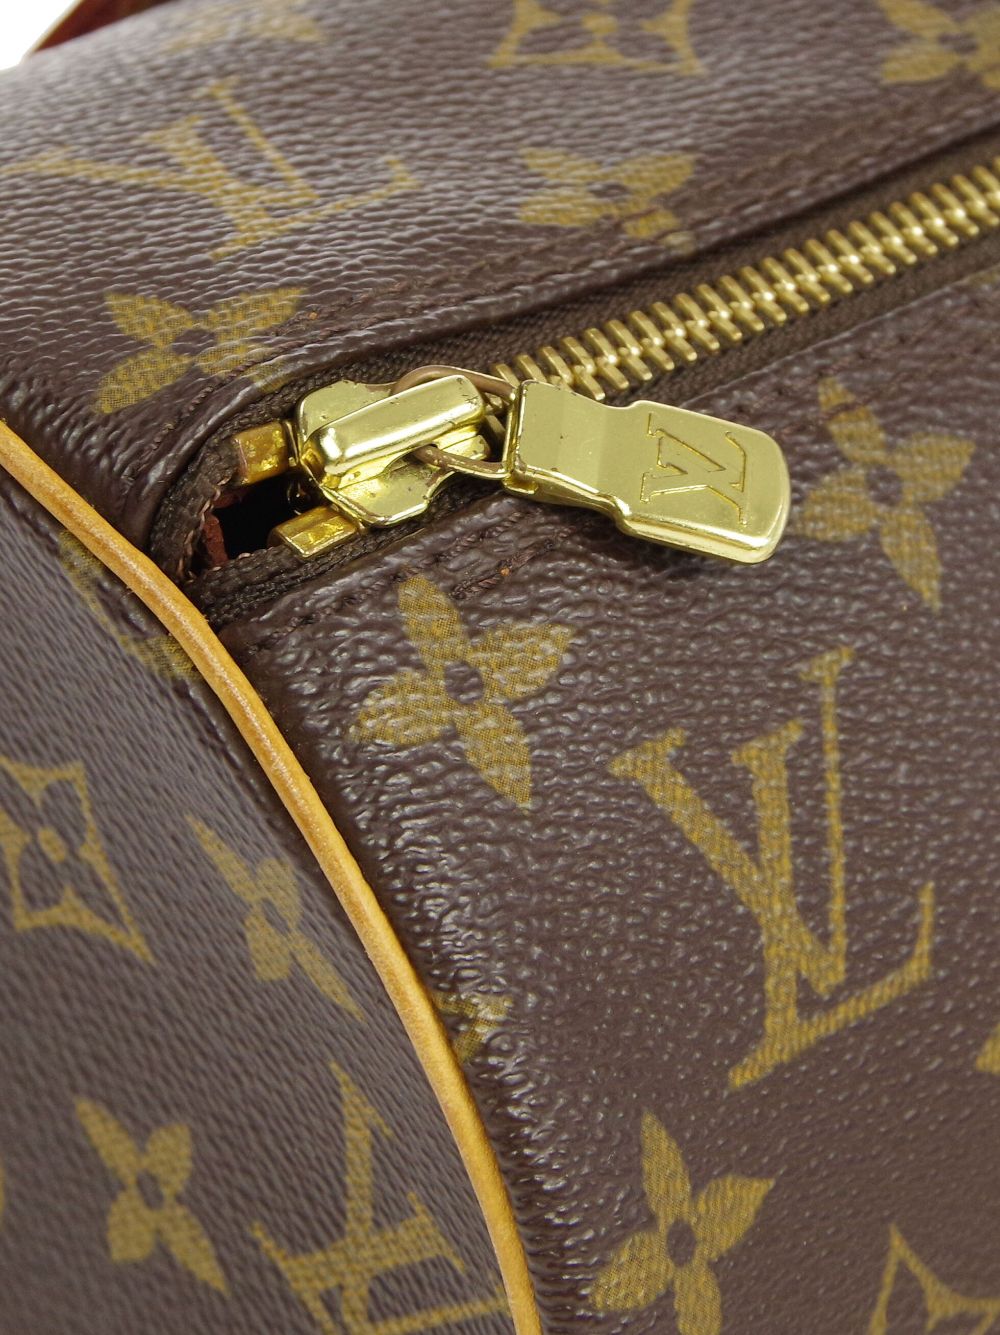 Louis Vuitton 2003 pre-owned Papillon 30 Handbag - Farfetch